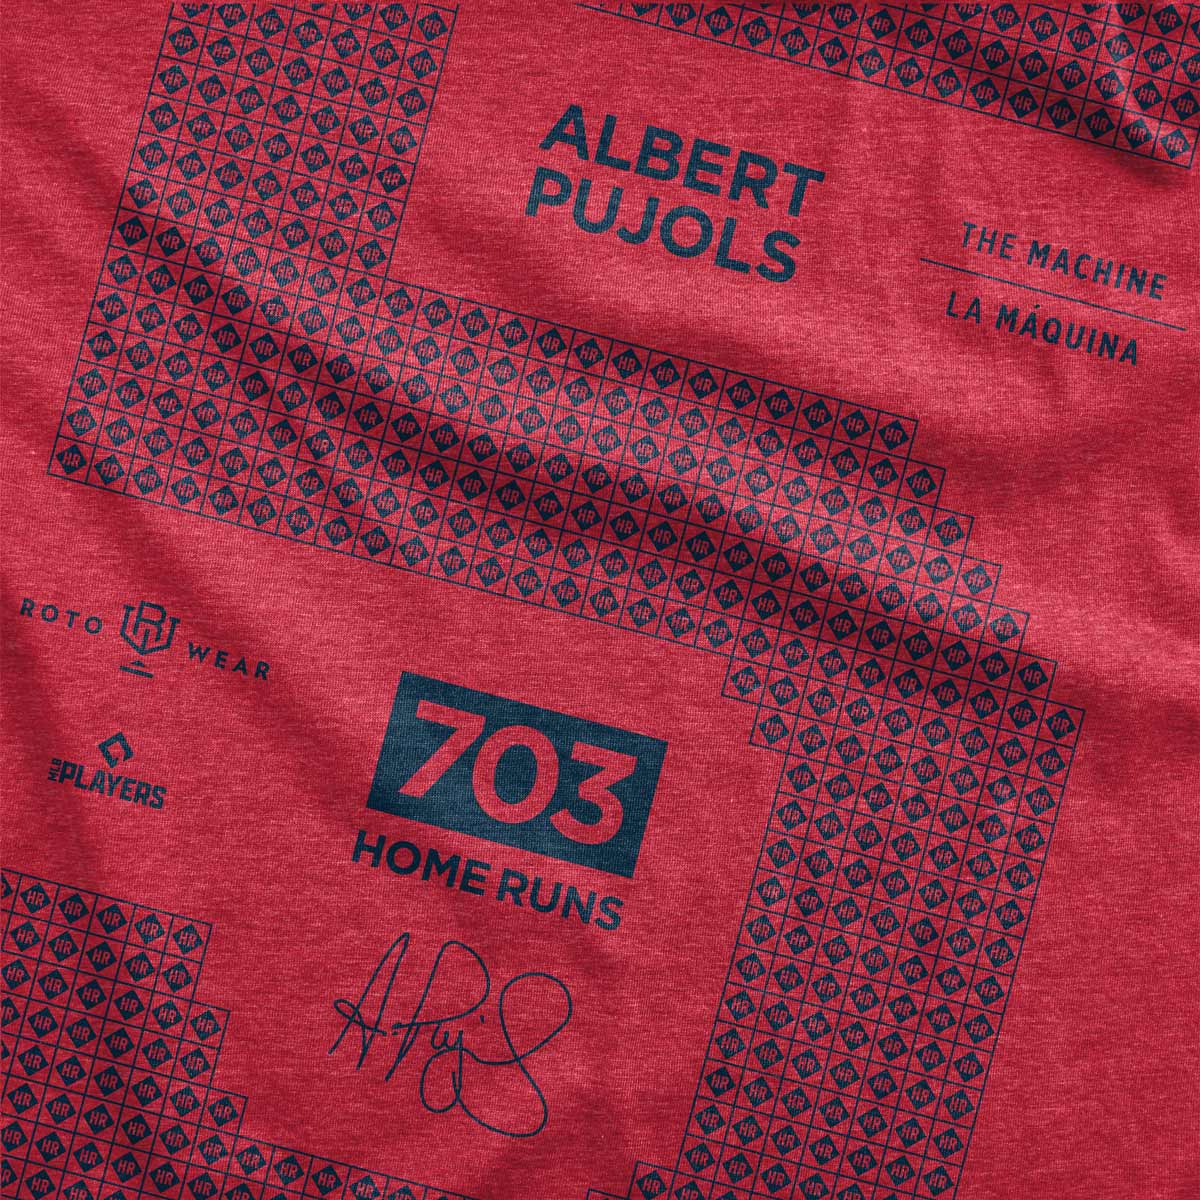 Albert Pujols: 700 Vol. 2, Youth T-Shirt / Small - MLB - Sports Fan Gear | breakingt